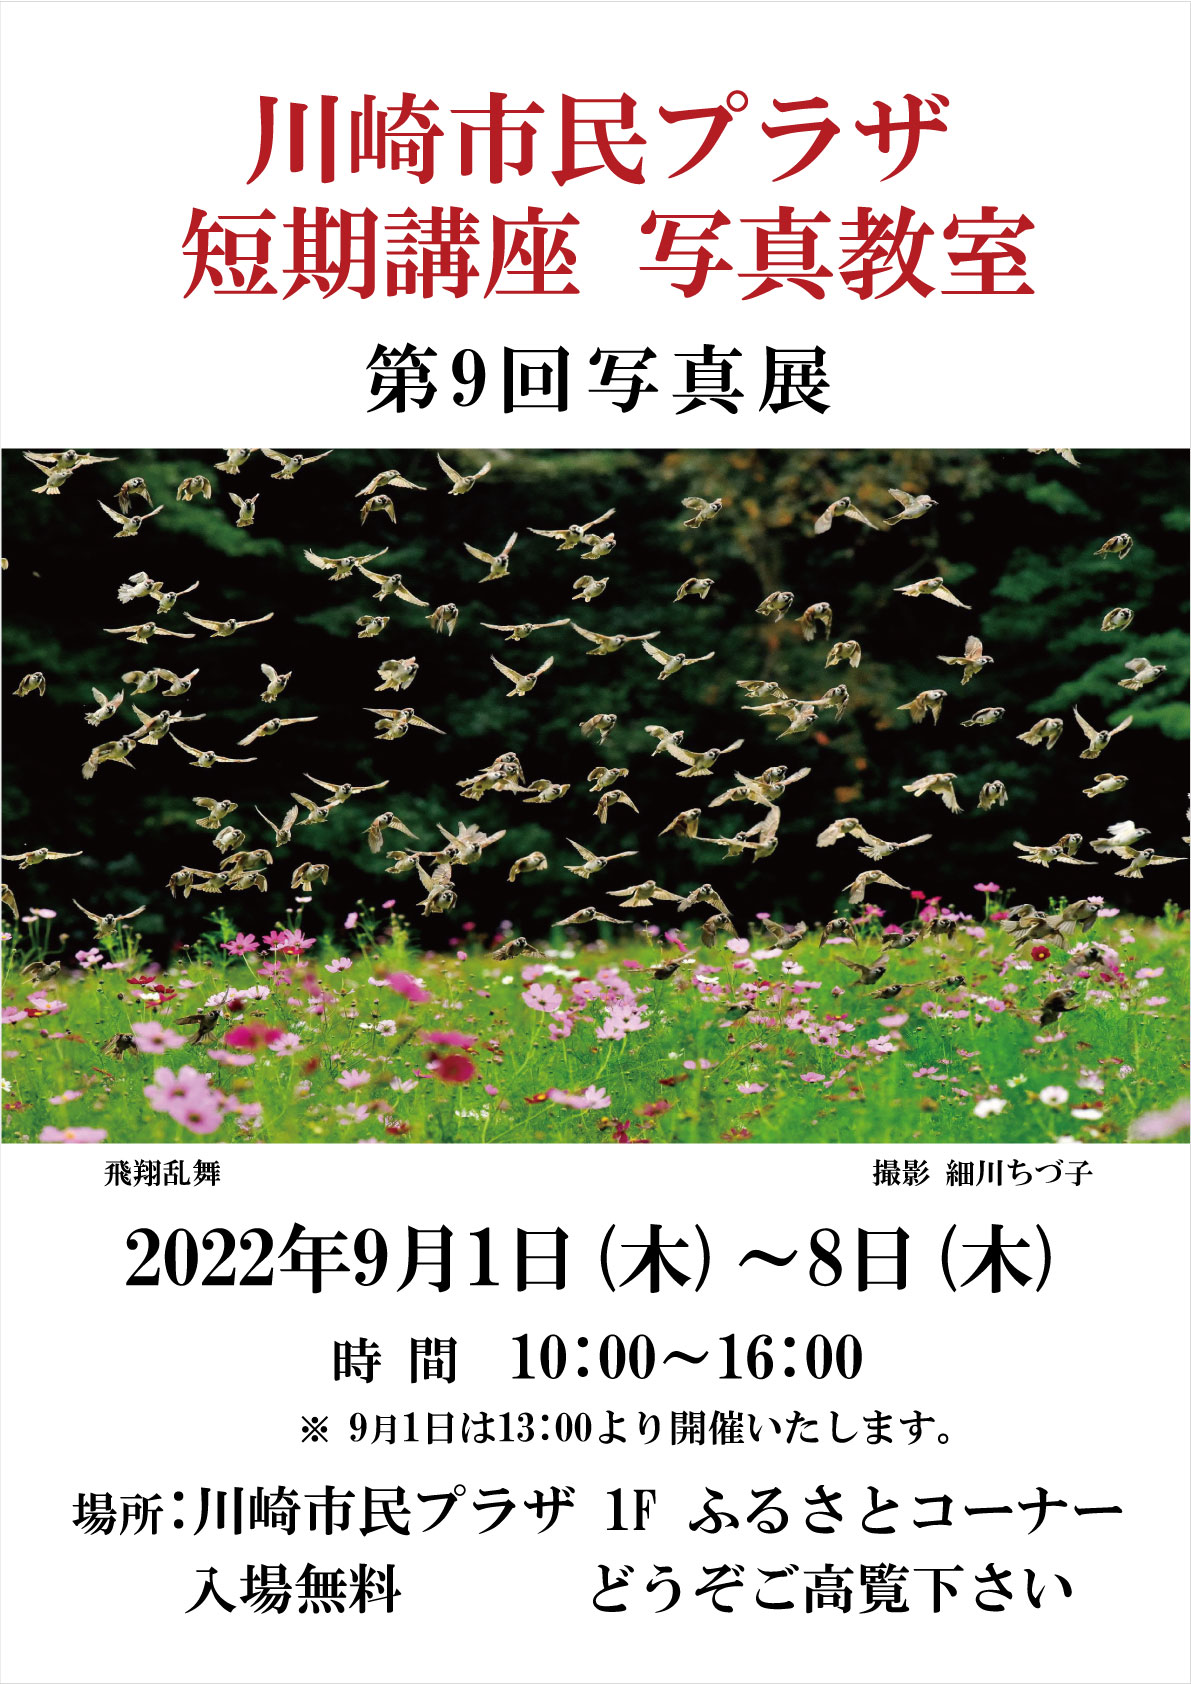 【2022年9月1-8日】短期講座「写真教室」写真展